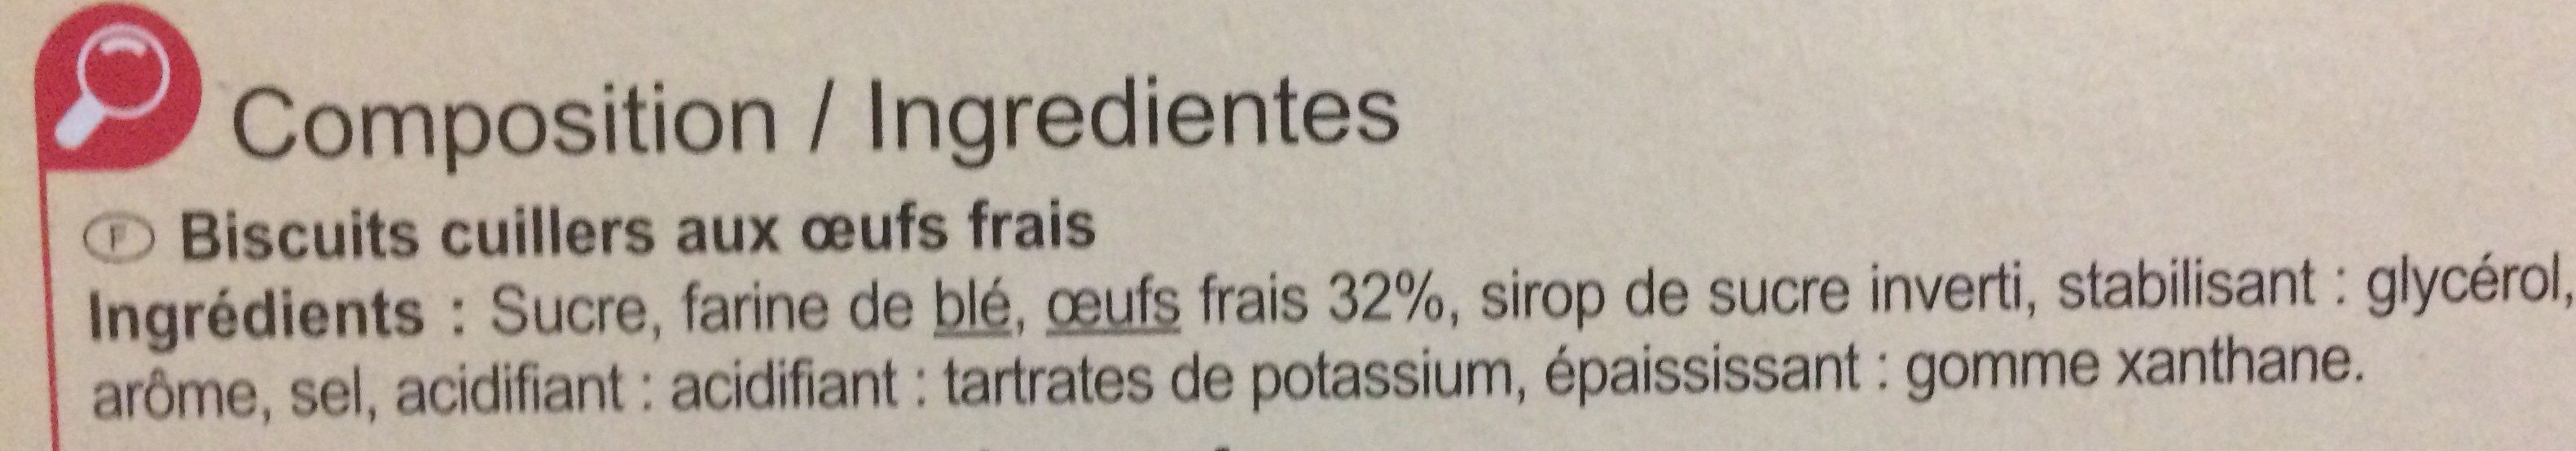 Cuillers pâtissiers - Ingredients - fr